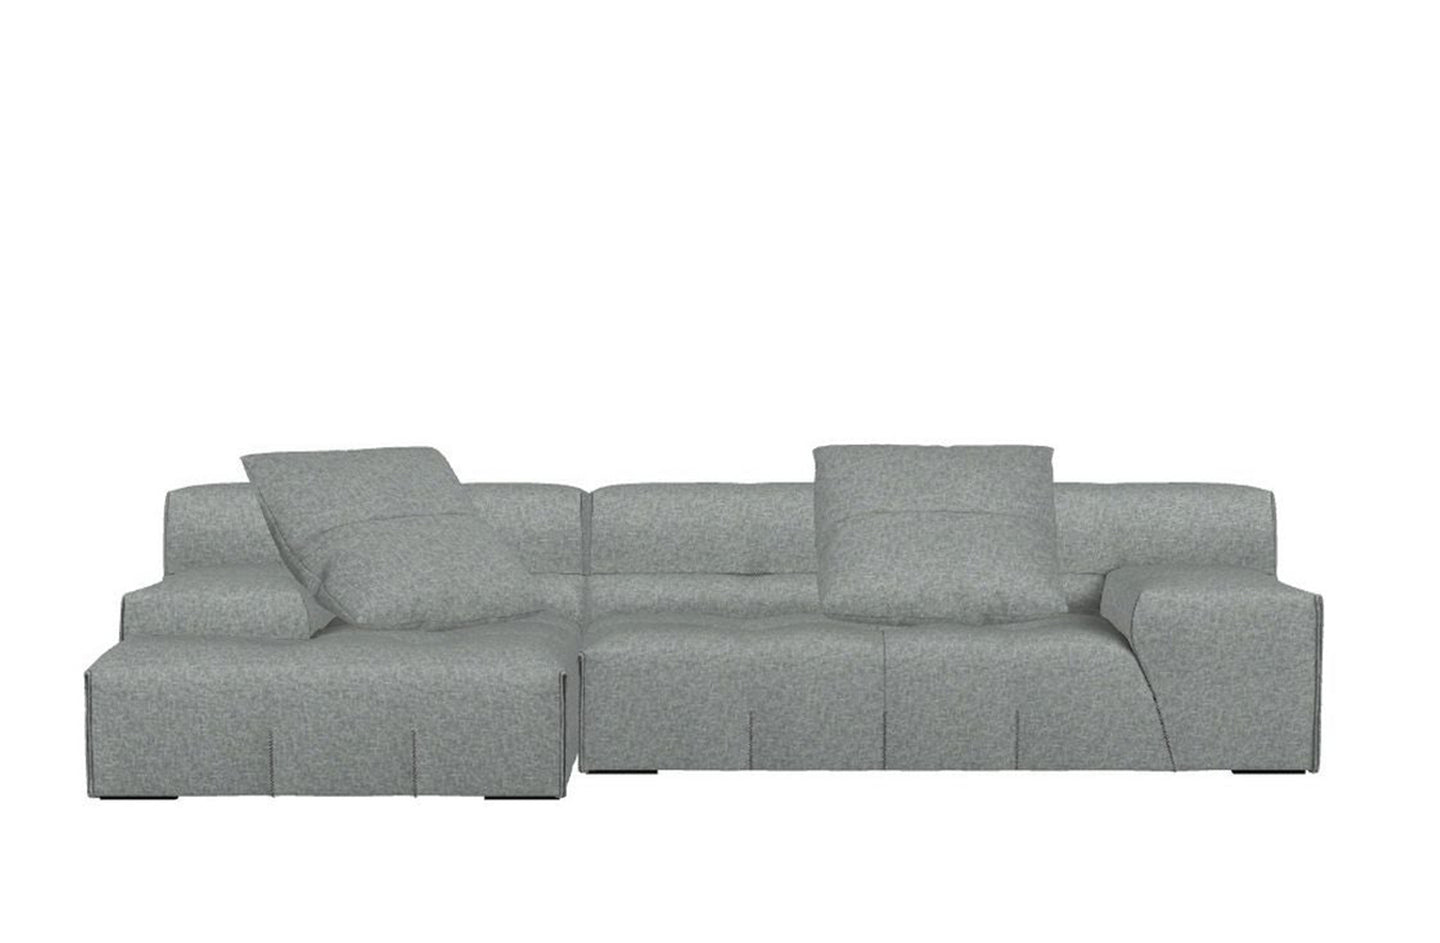 Tufty-Too Sofa
